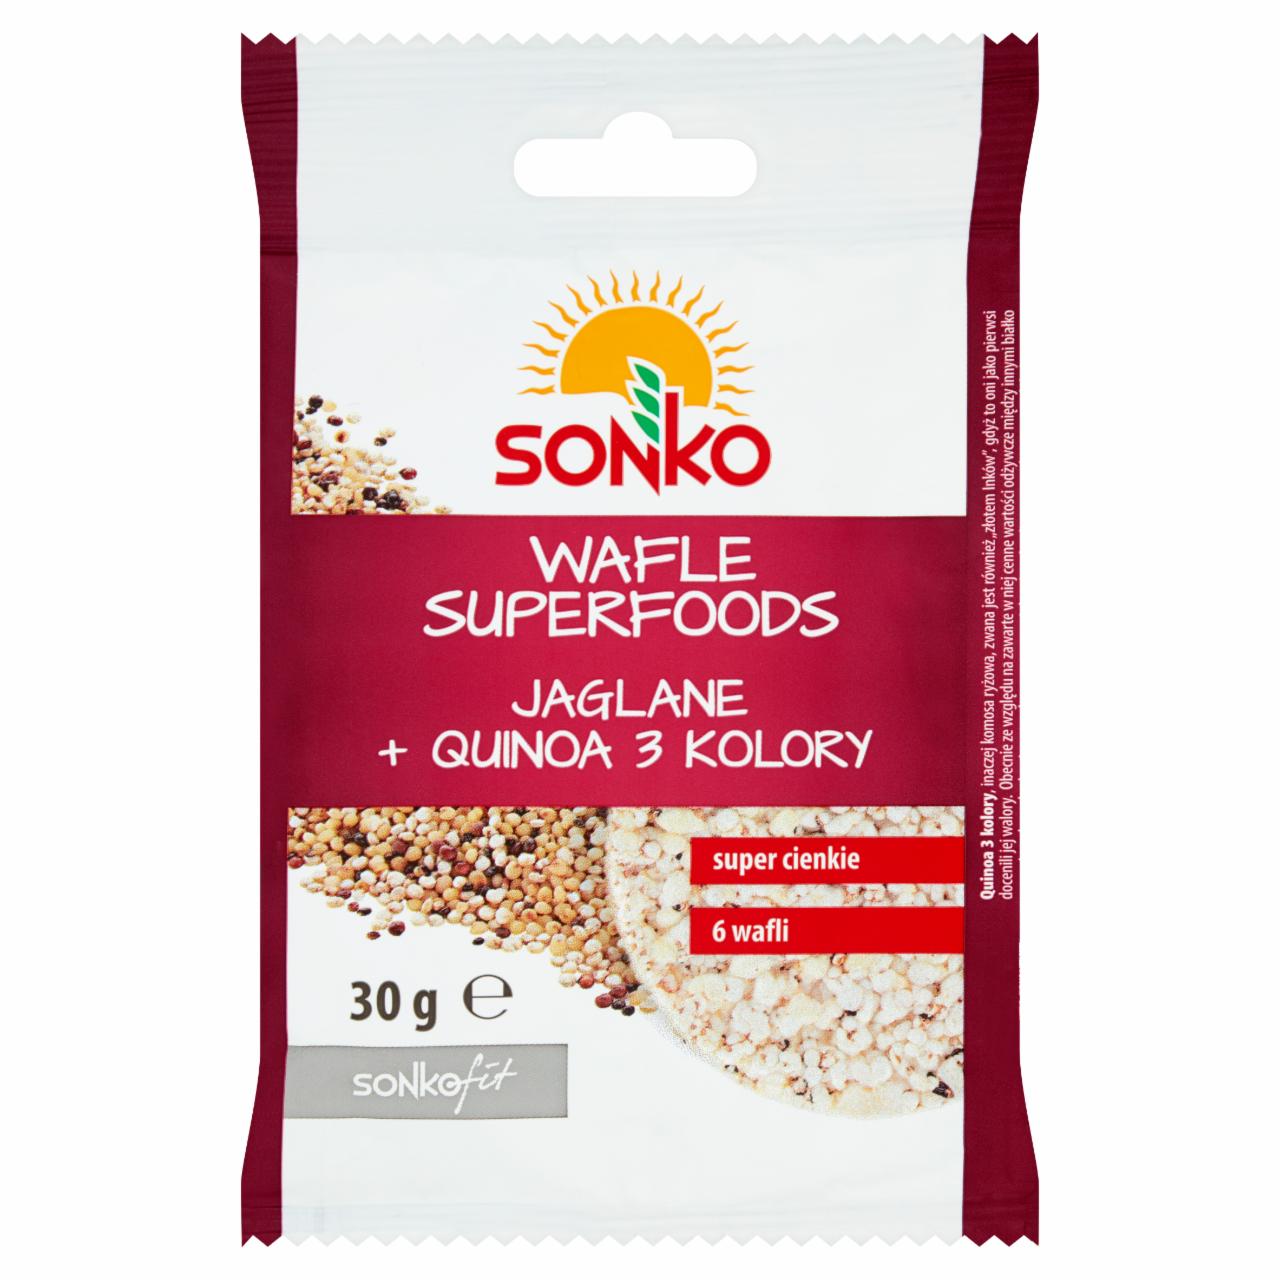 Zdjęcia - Sonko Wafle superfoods jaglane + quinoa 3 kolory 30 g